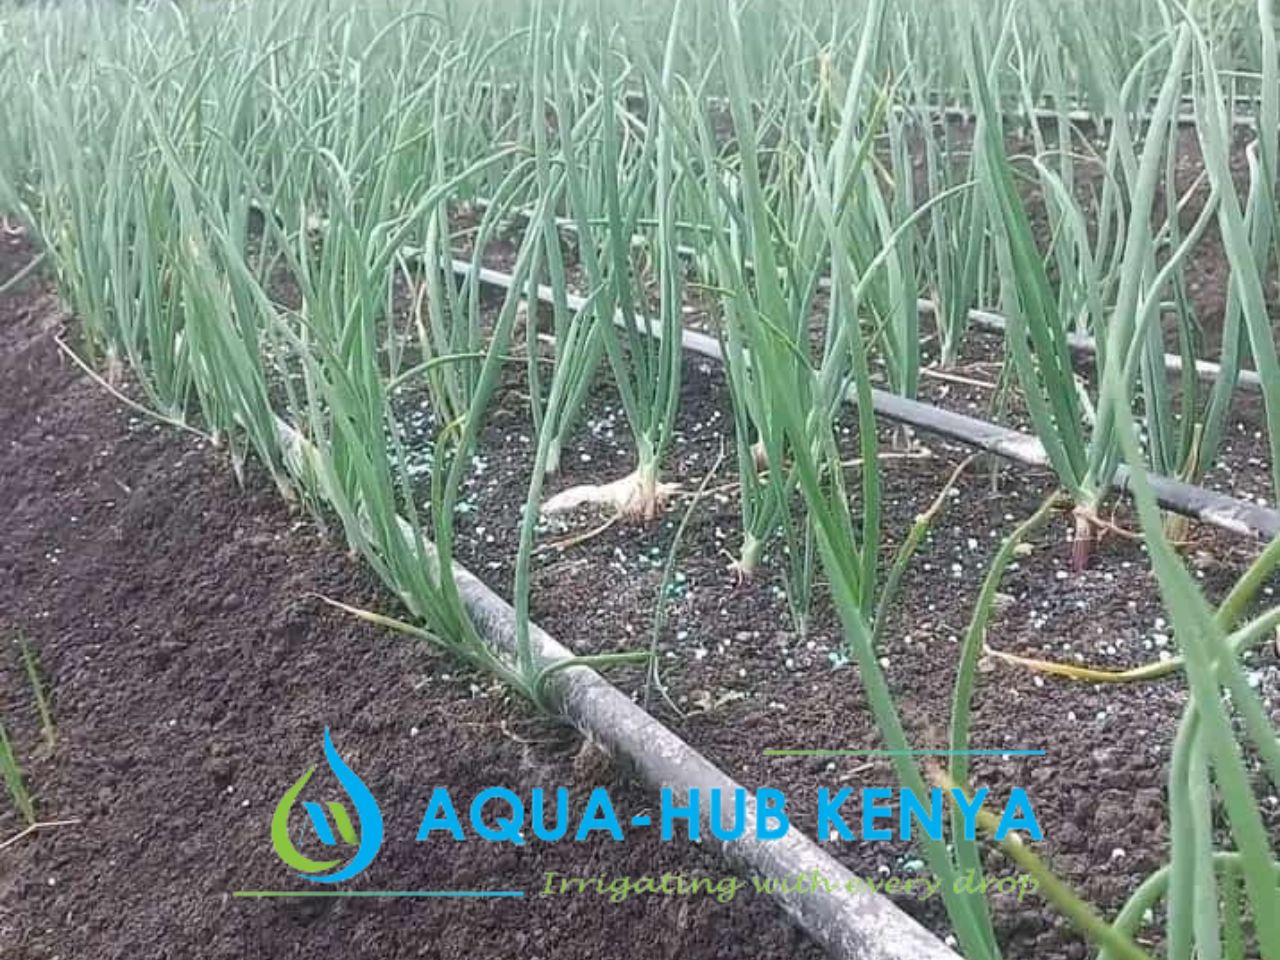 Onion Drip irrigation Farming in Kenya